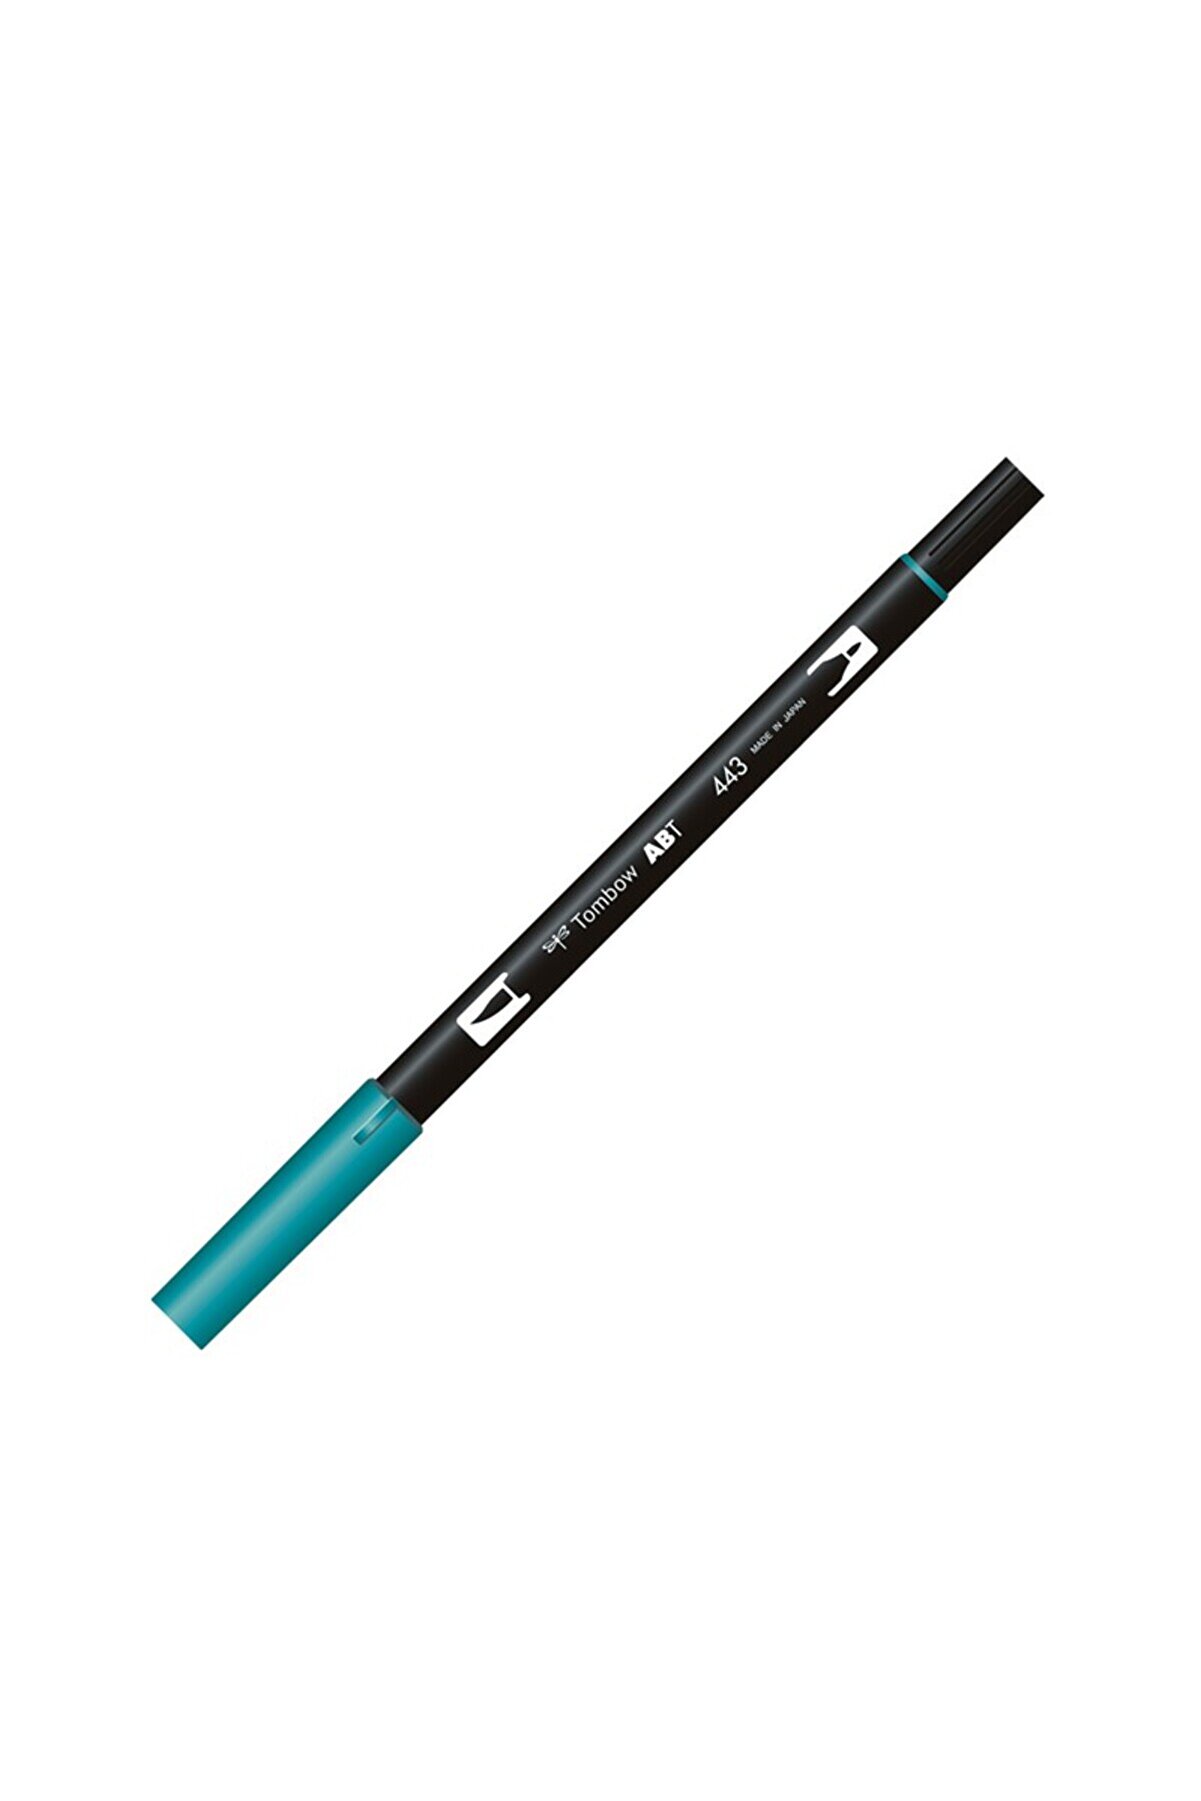 Tombow Ab-t Dual Brush Pen Grafik Kalemi Turquoise 443